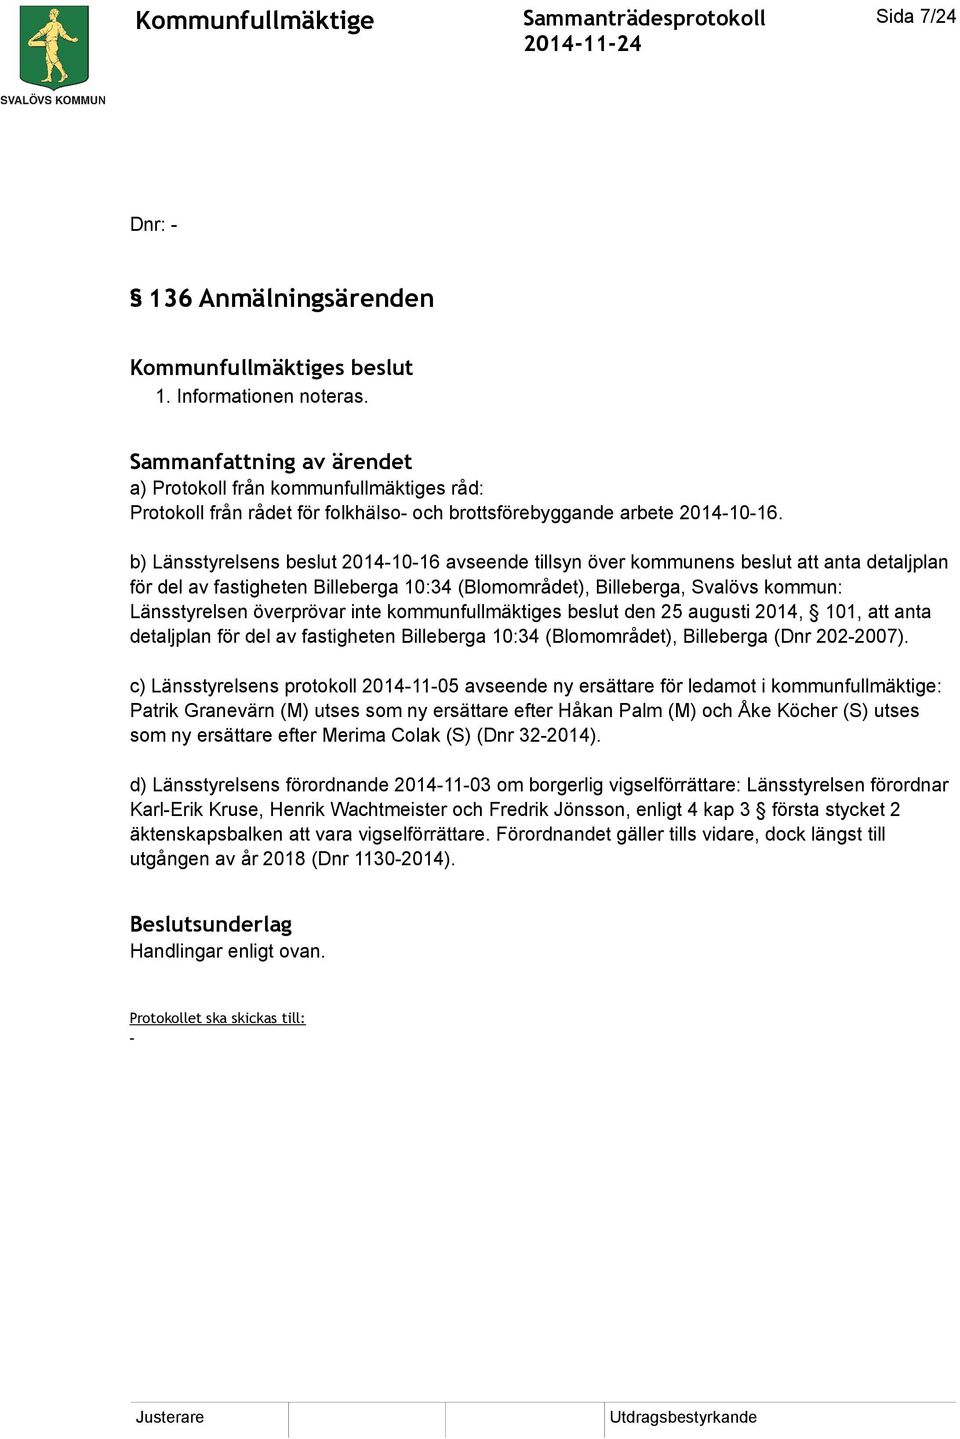 b) Länsstyrelsens beslut 2014-10-16 avseende tillsyn över kommunens beslut att anta detaljplan för del av fastigheten Billeberga 10:34 (Blomområdet), Billeberga, Svalövs kommun: Länsstyrelsen